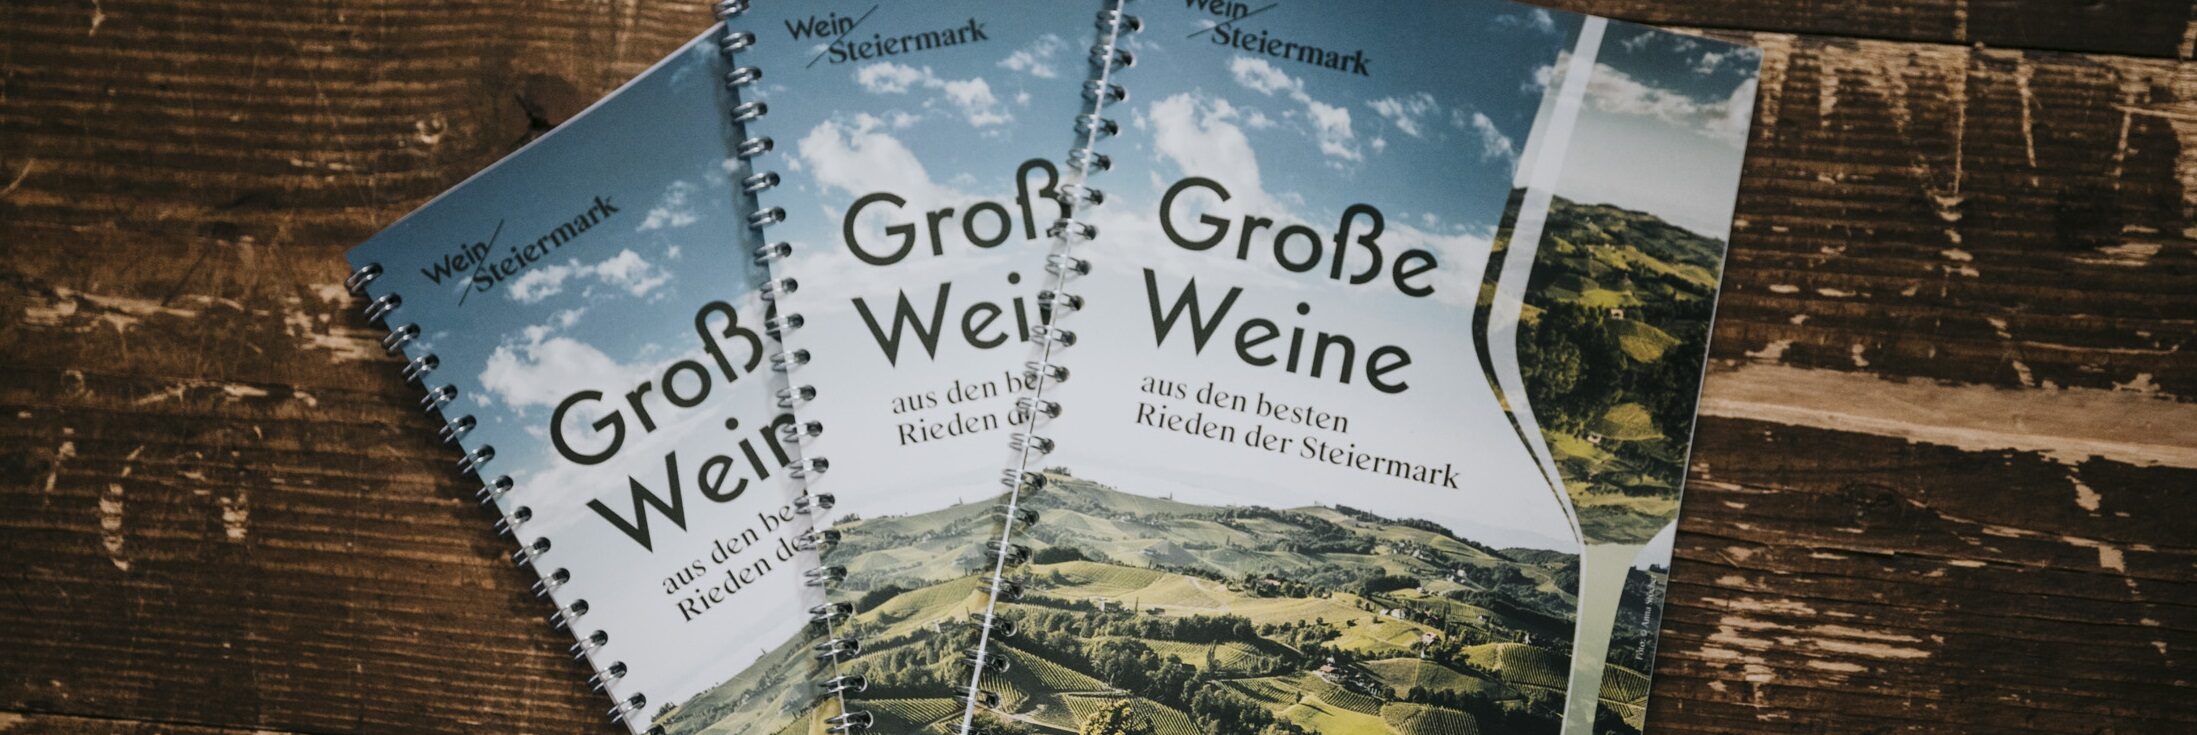 Steirische Riedenweinpräsentation 2022 - Alte Universität - Wein Steiermark - Graz